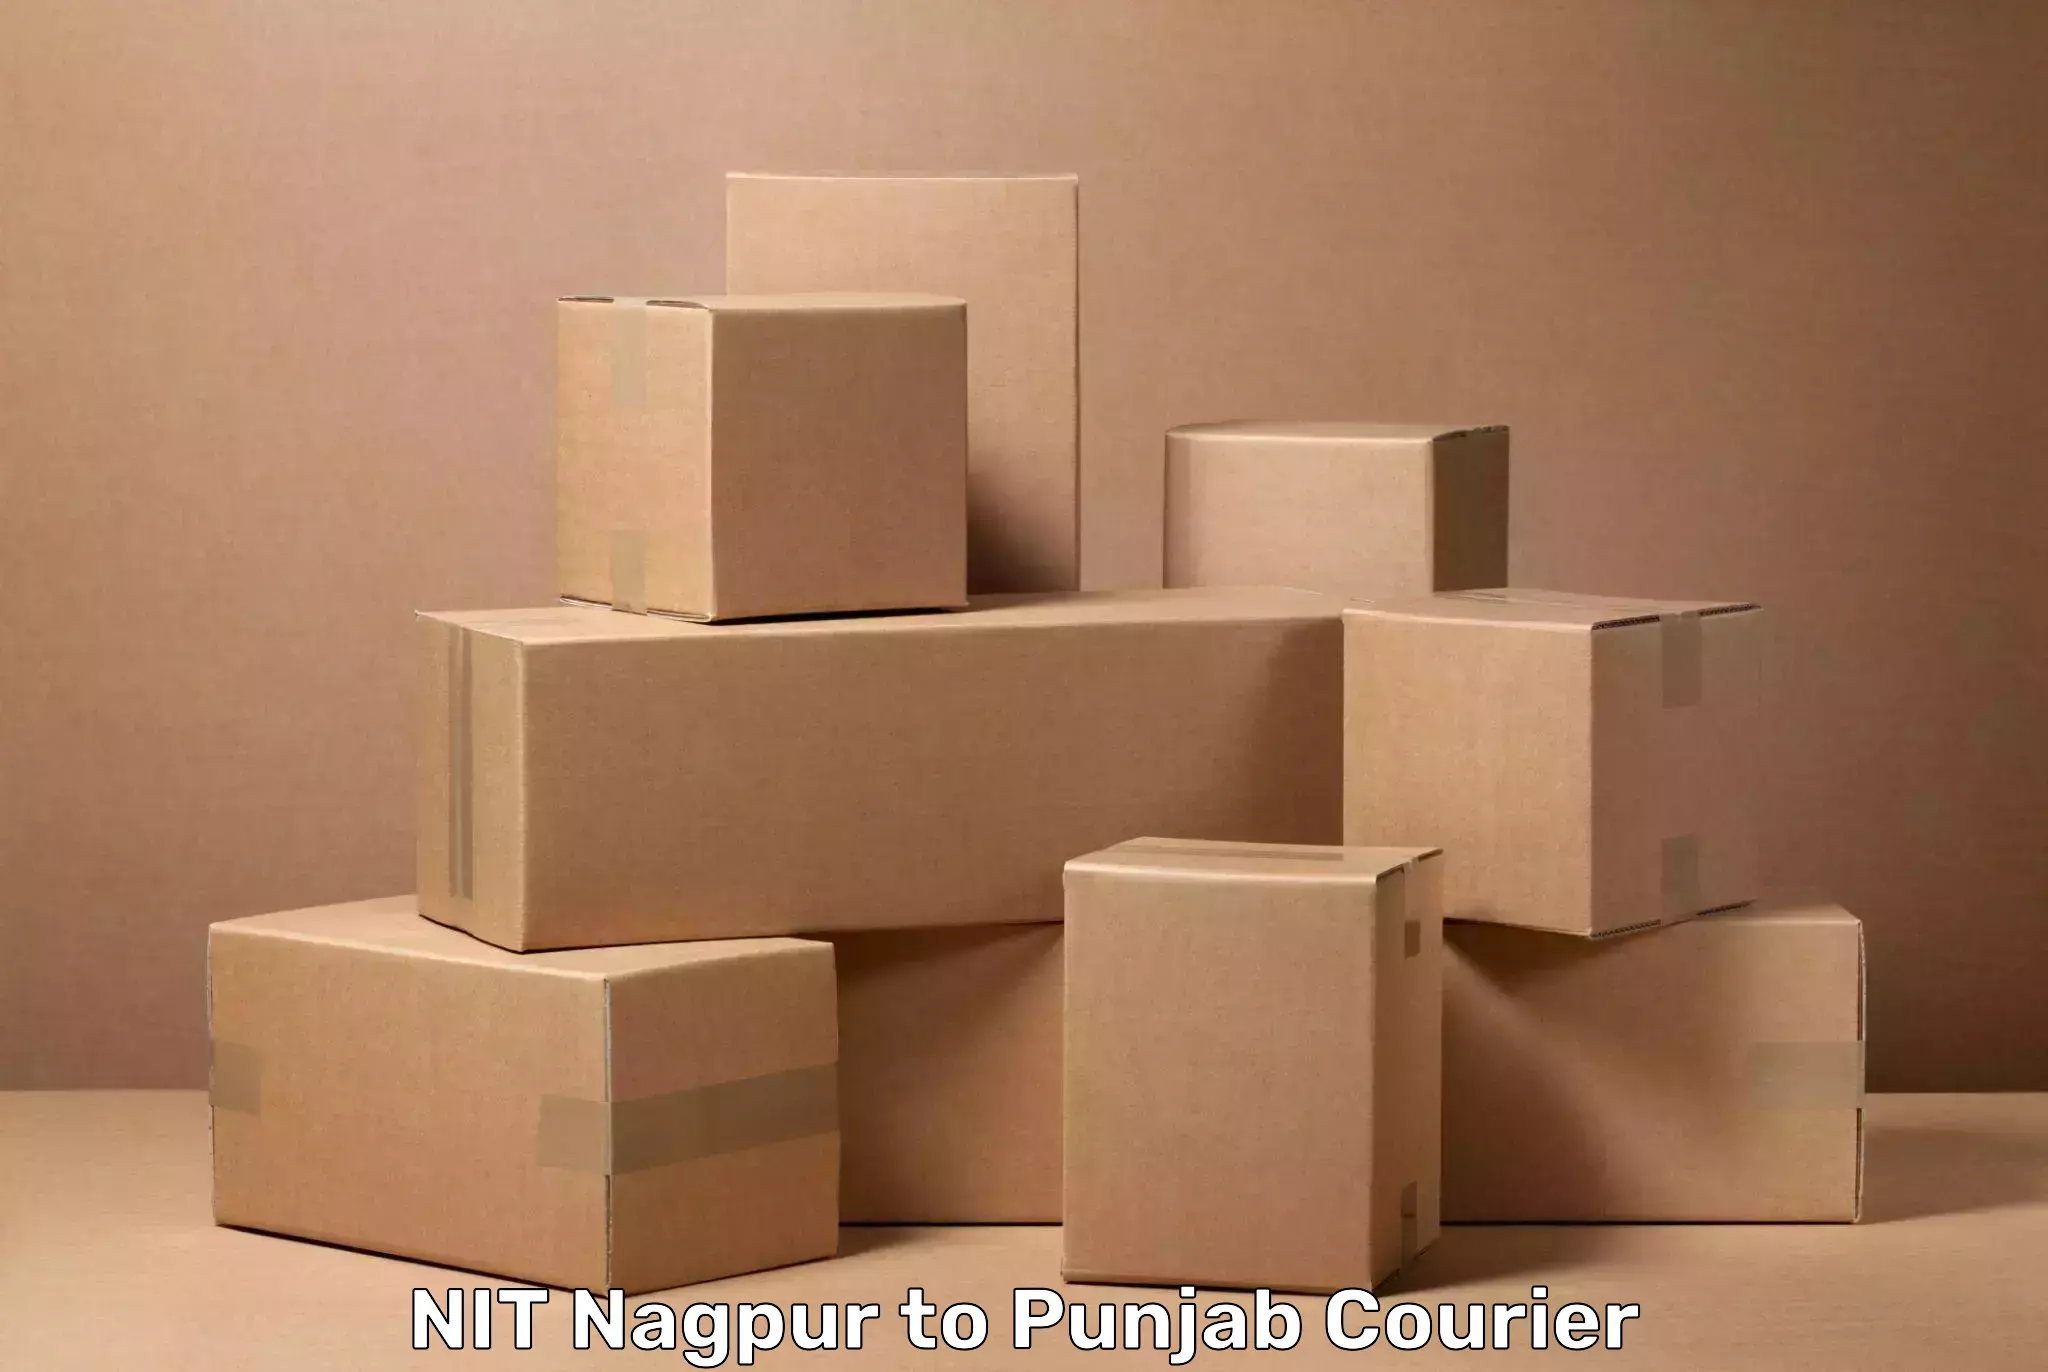 Baggage transport cost NIT Nagpur to Dinanagar